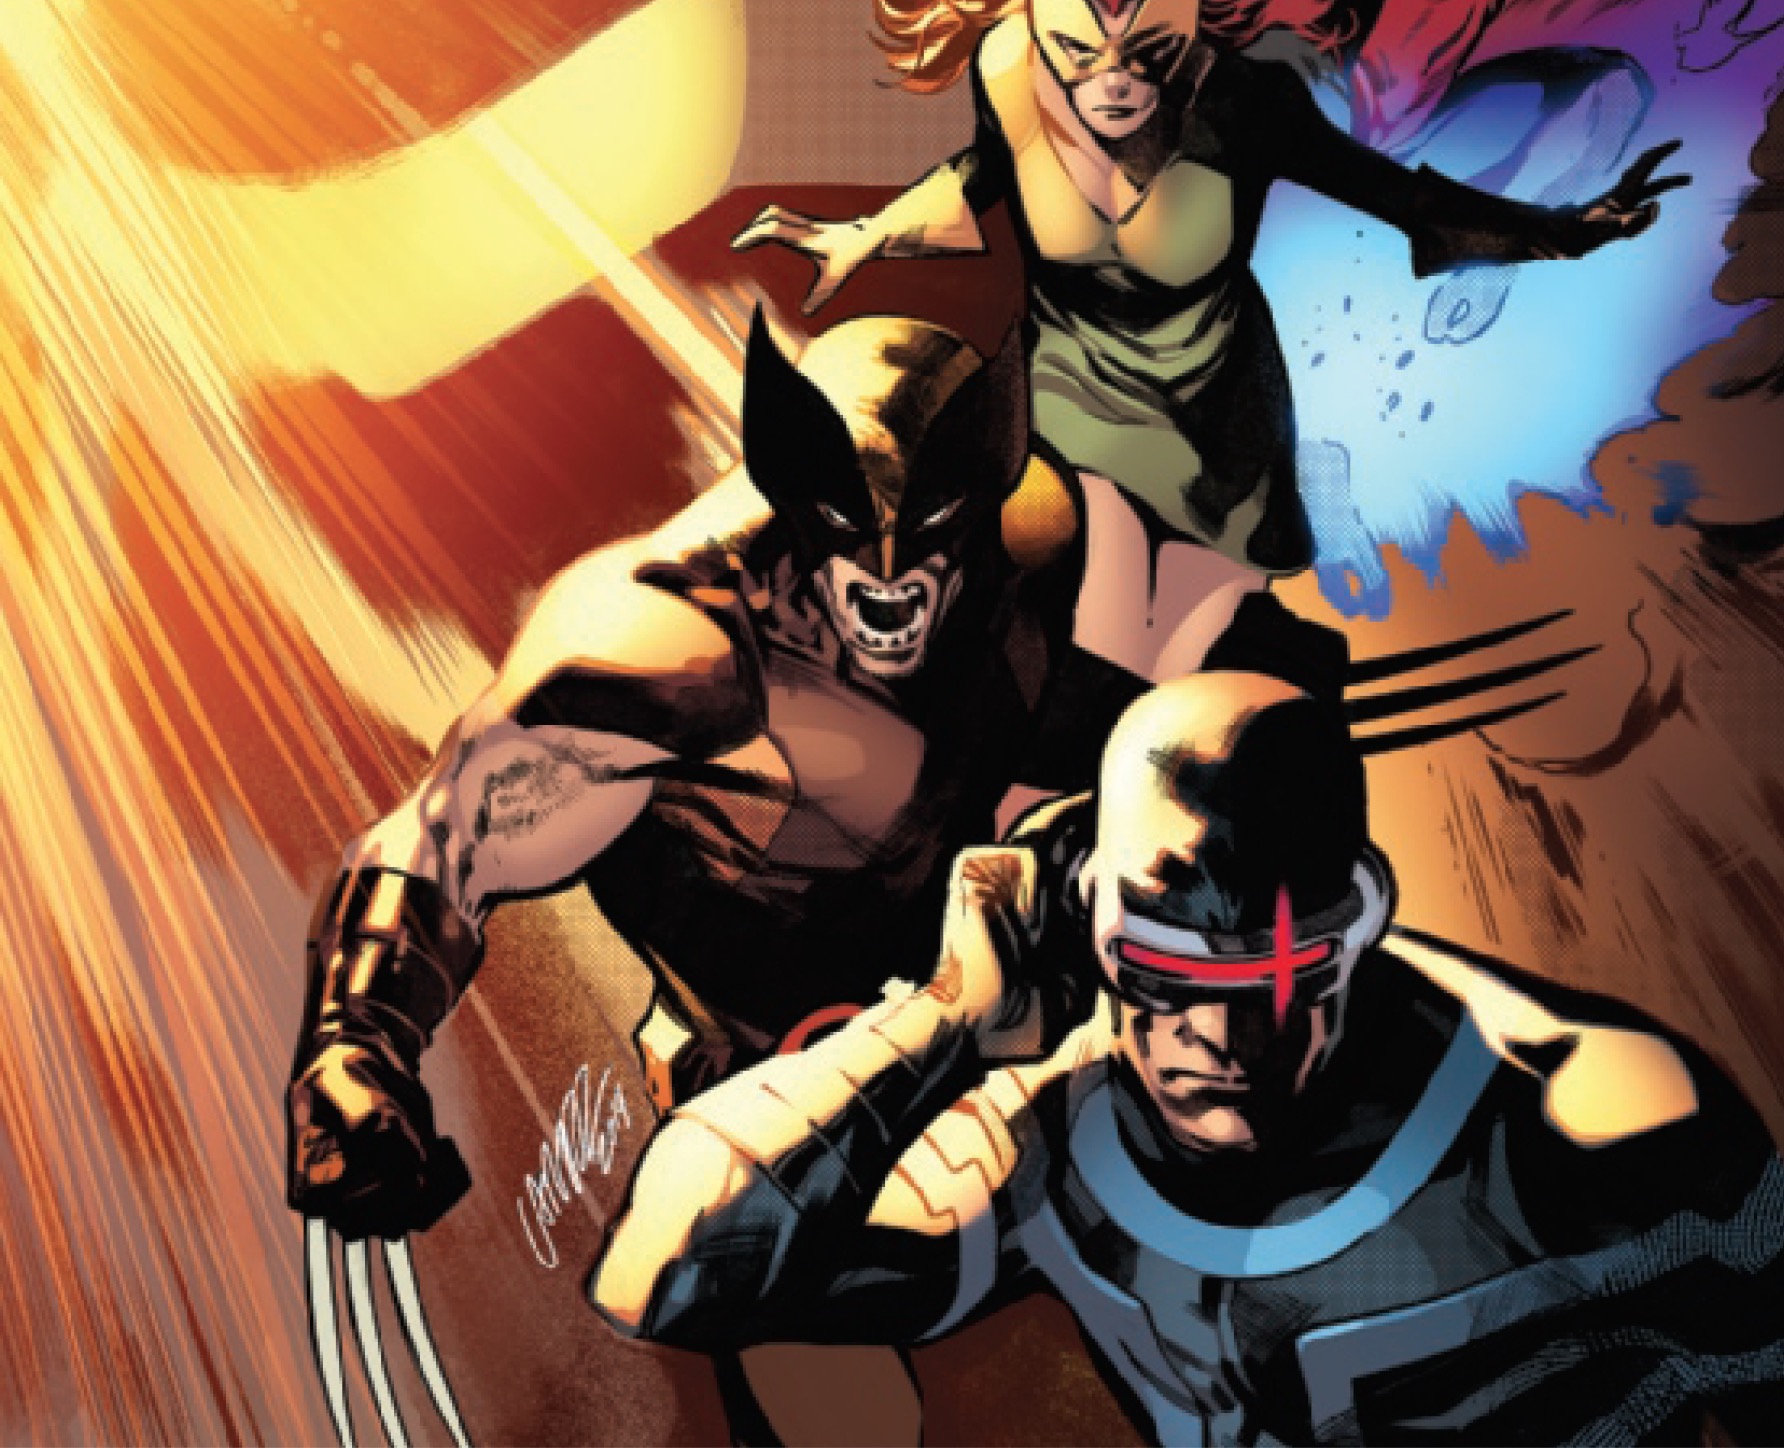 Does 'X-Men' #1 set up a resurrection arms race?